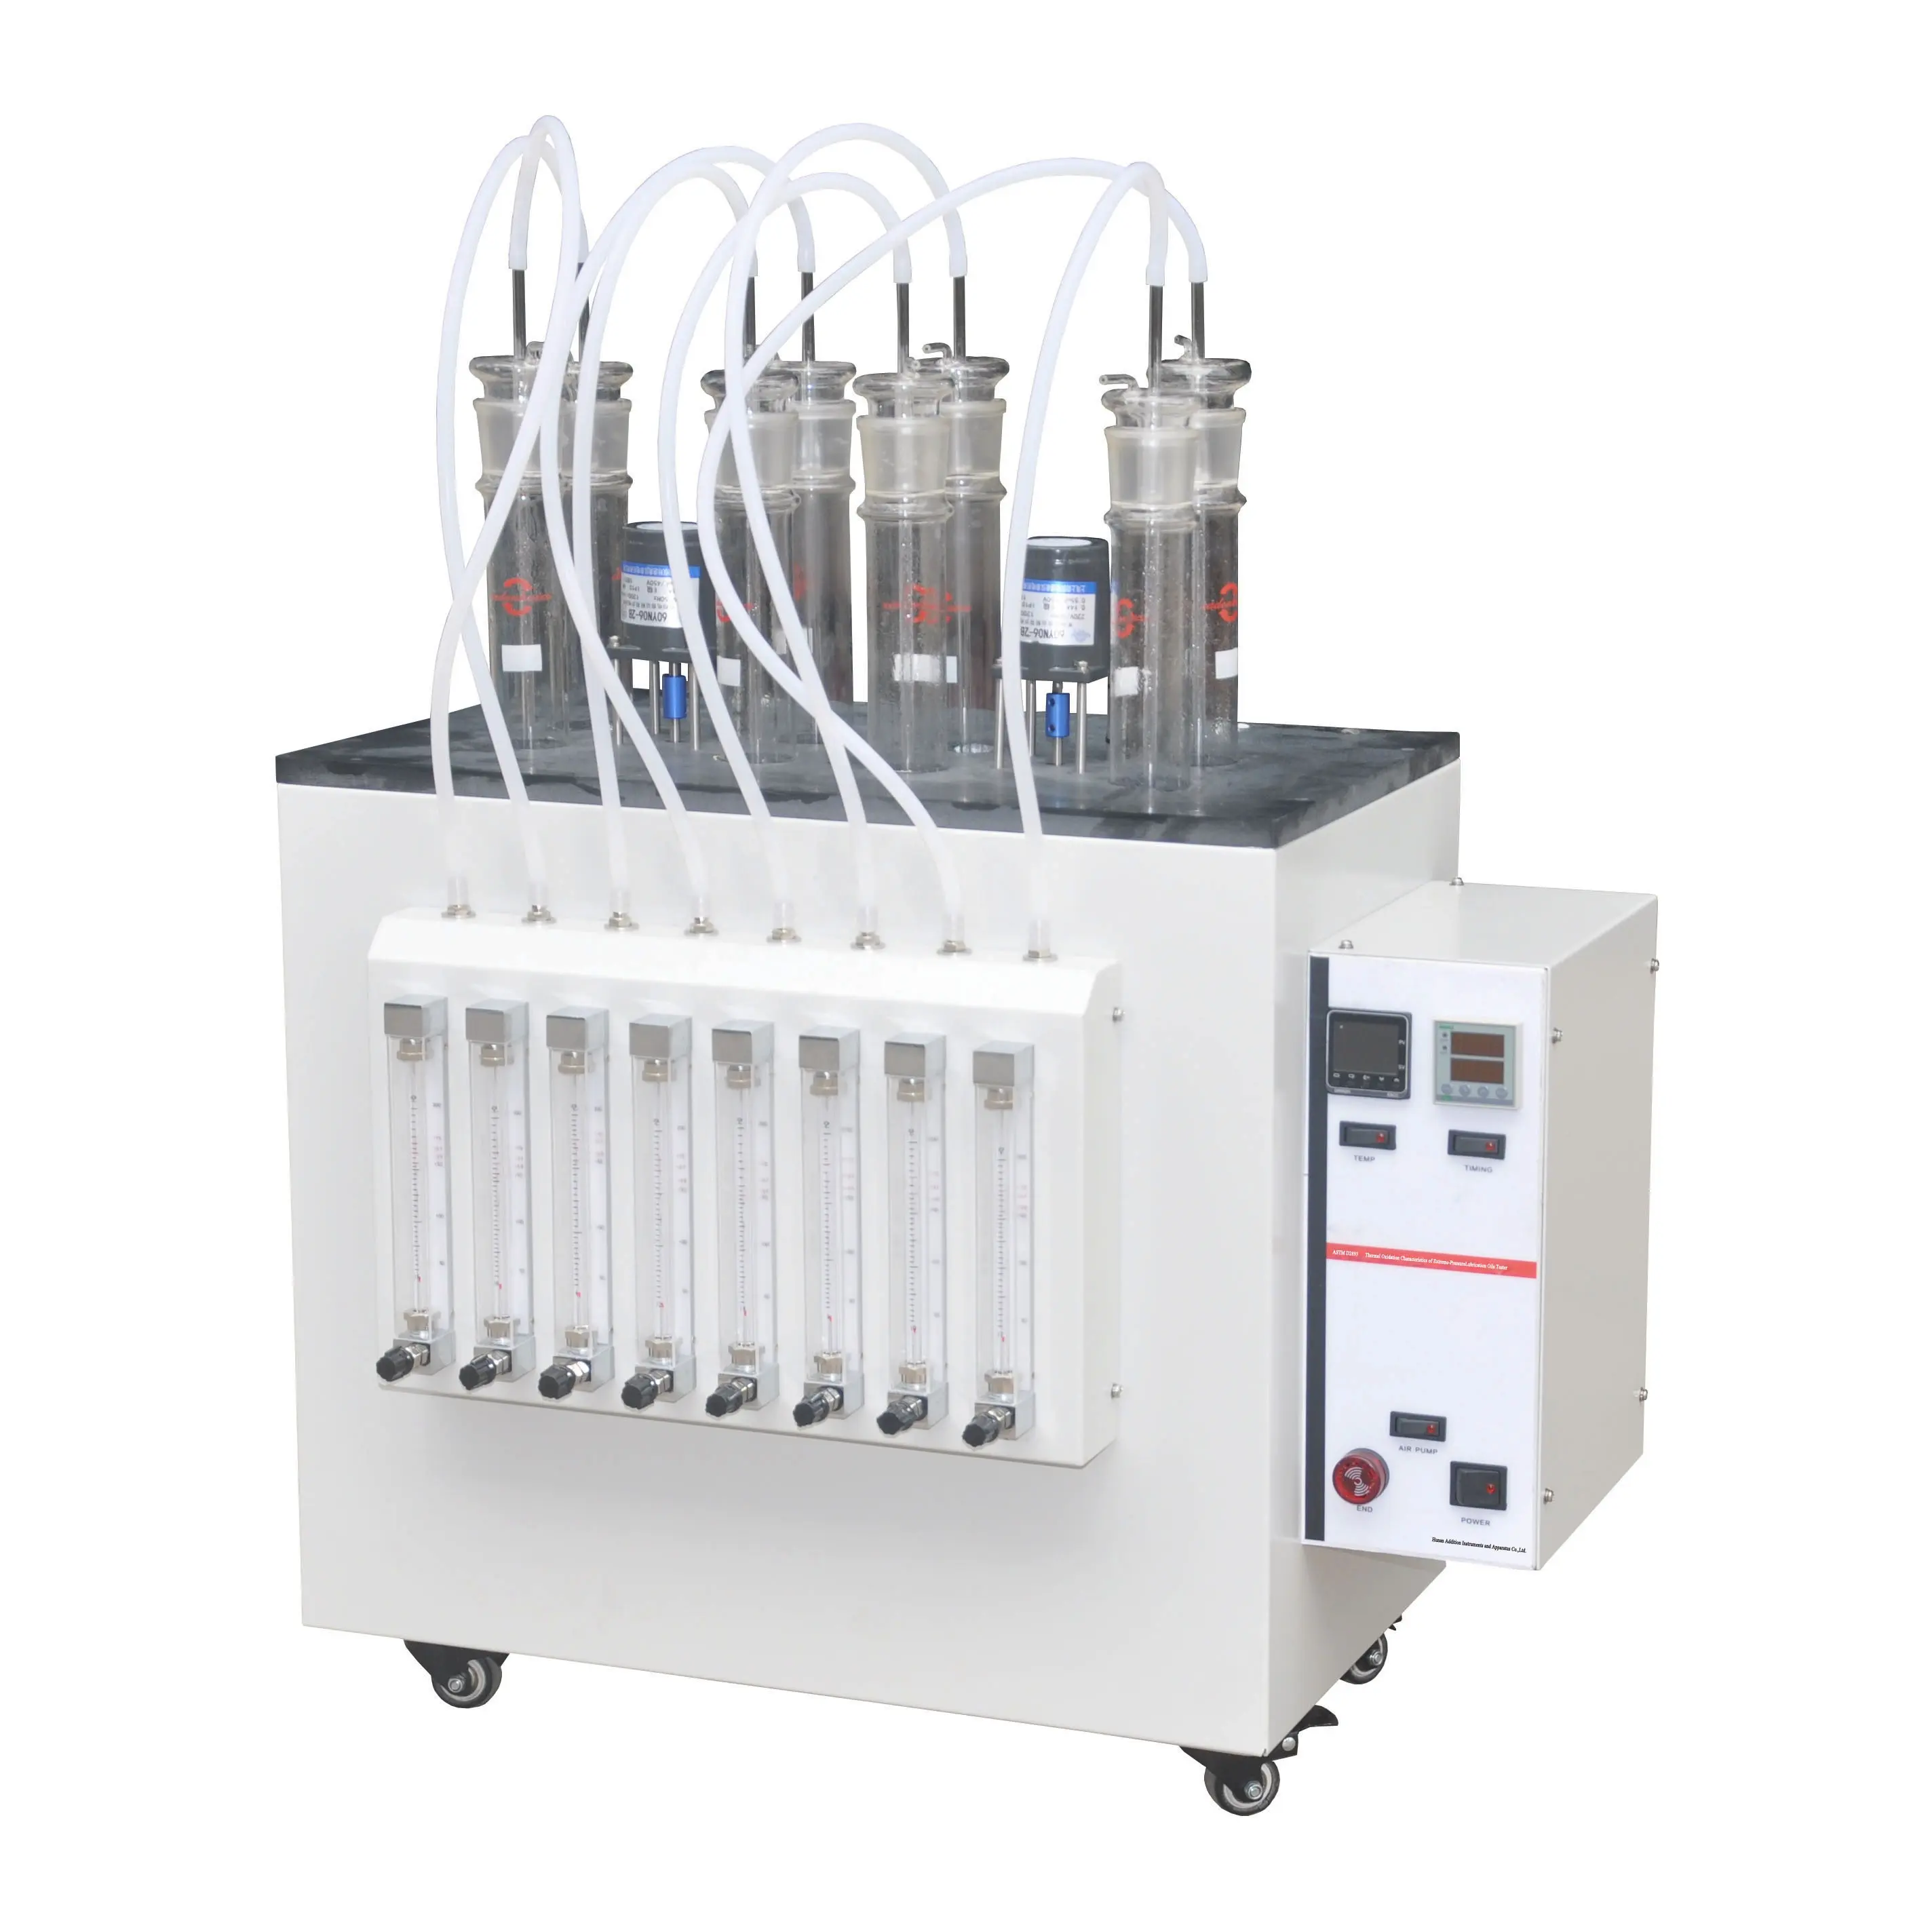 ASTM D2893 характеристики термического окисления смазочных масел экстремального давления тестер экстремального давления анализатор экстремального давления